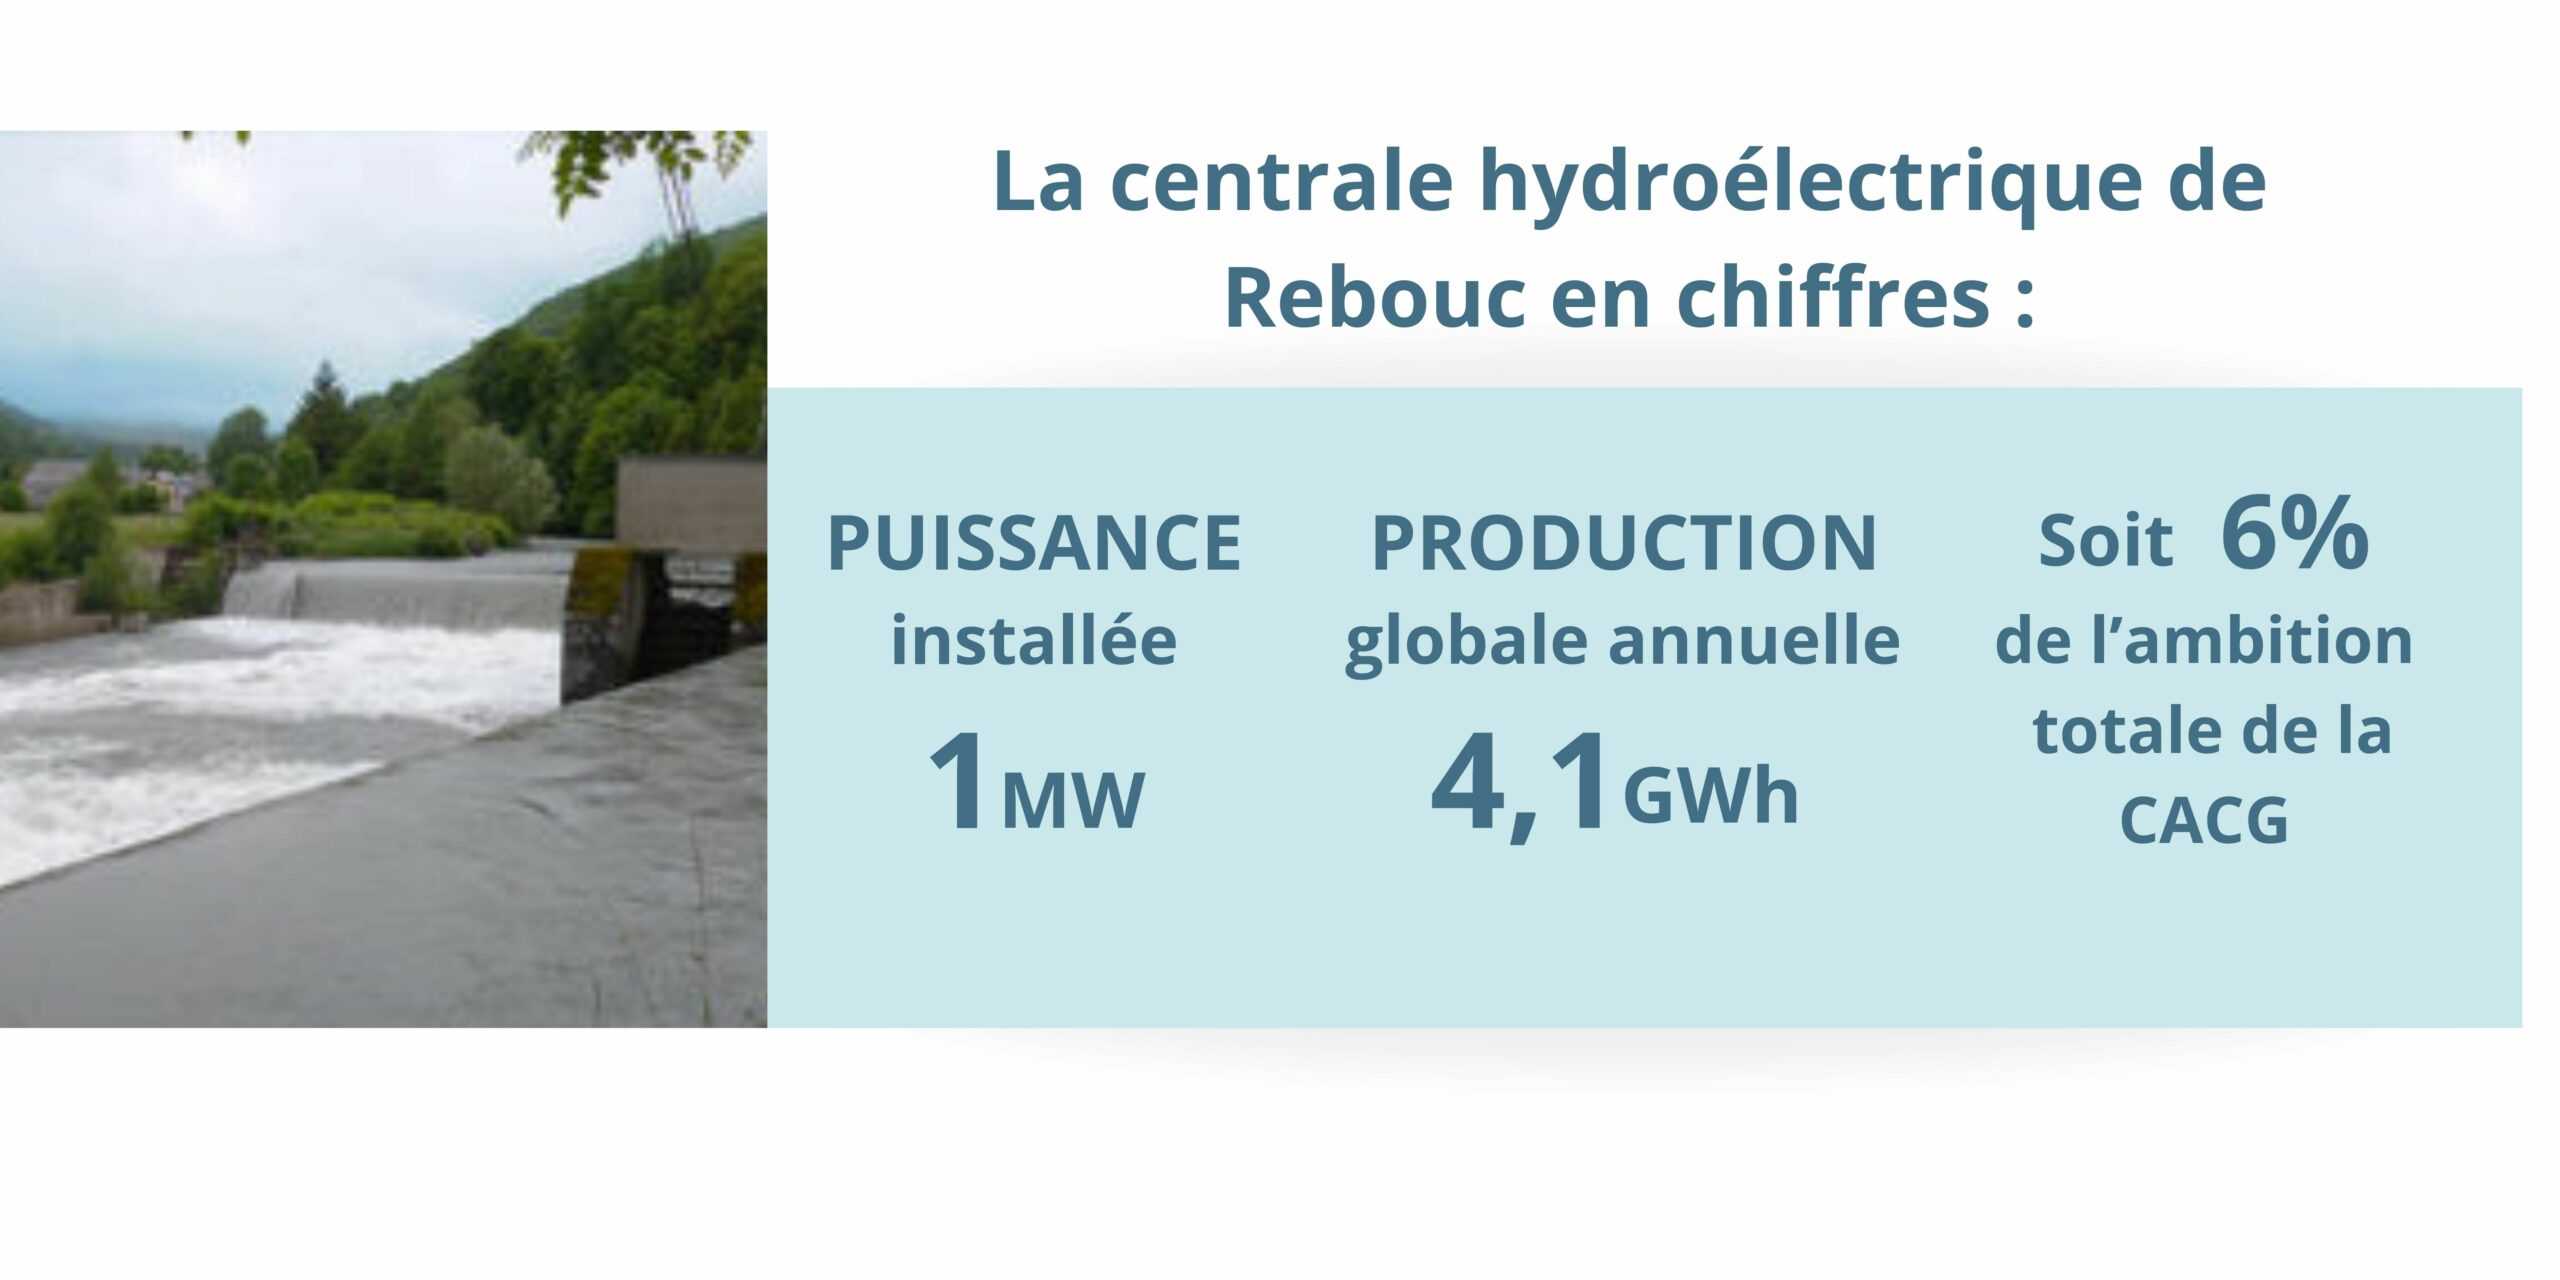 Centrale hydroélectrique de Rebouc en chiffres